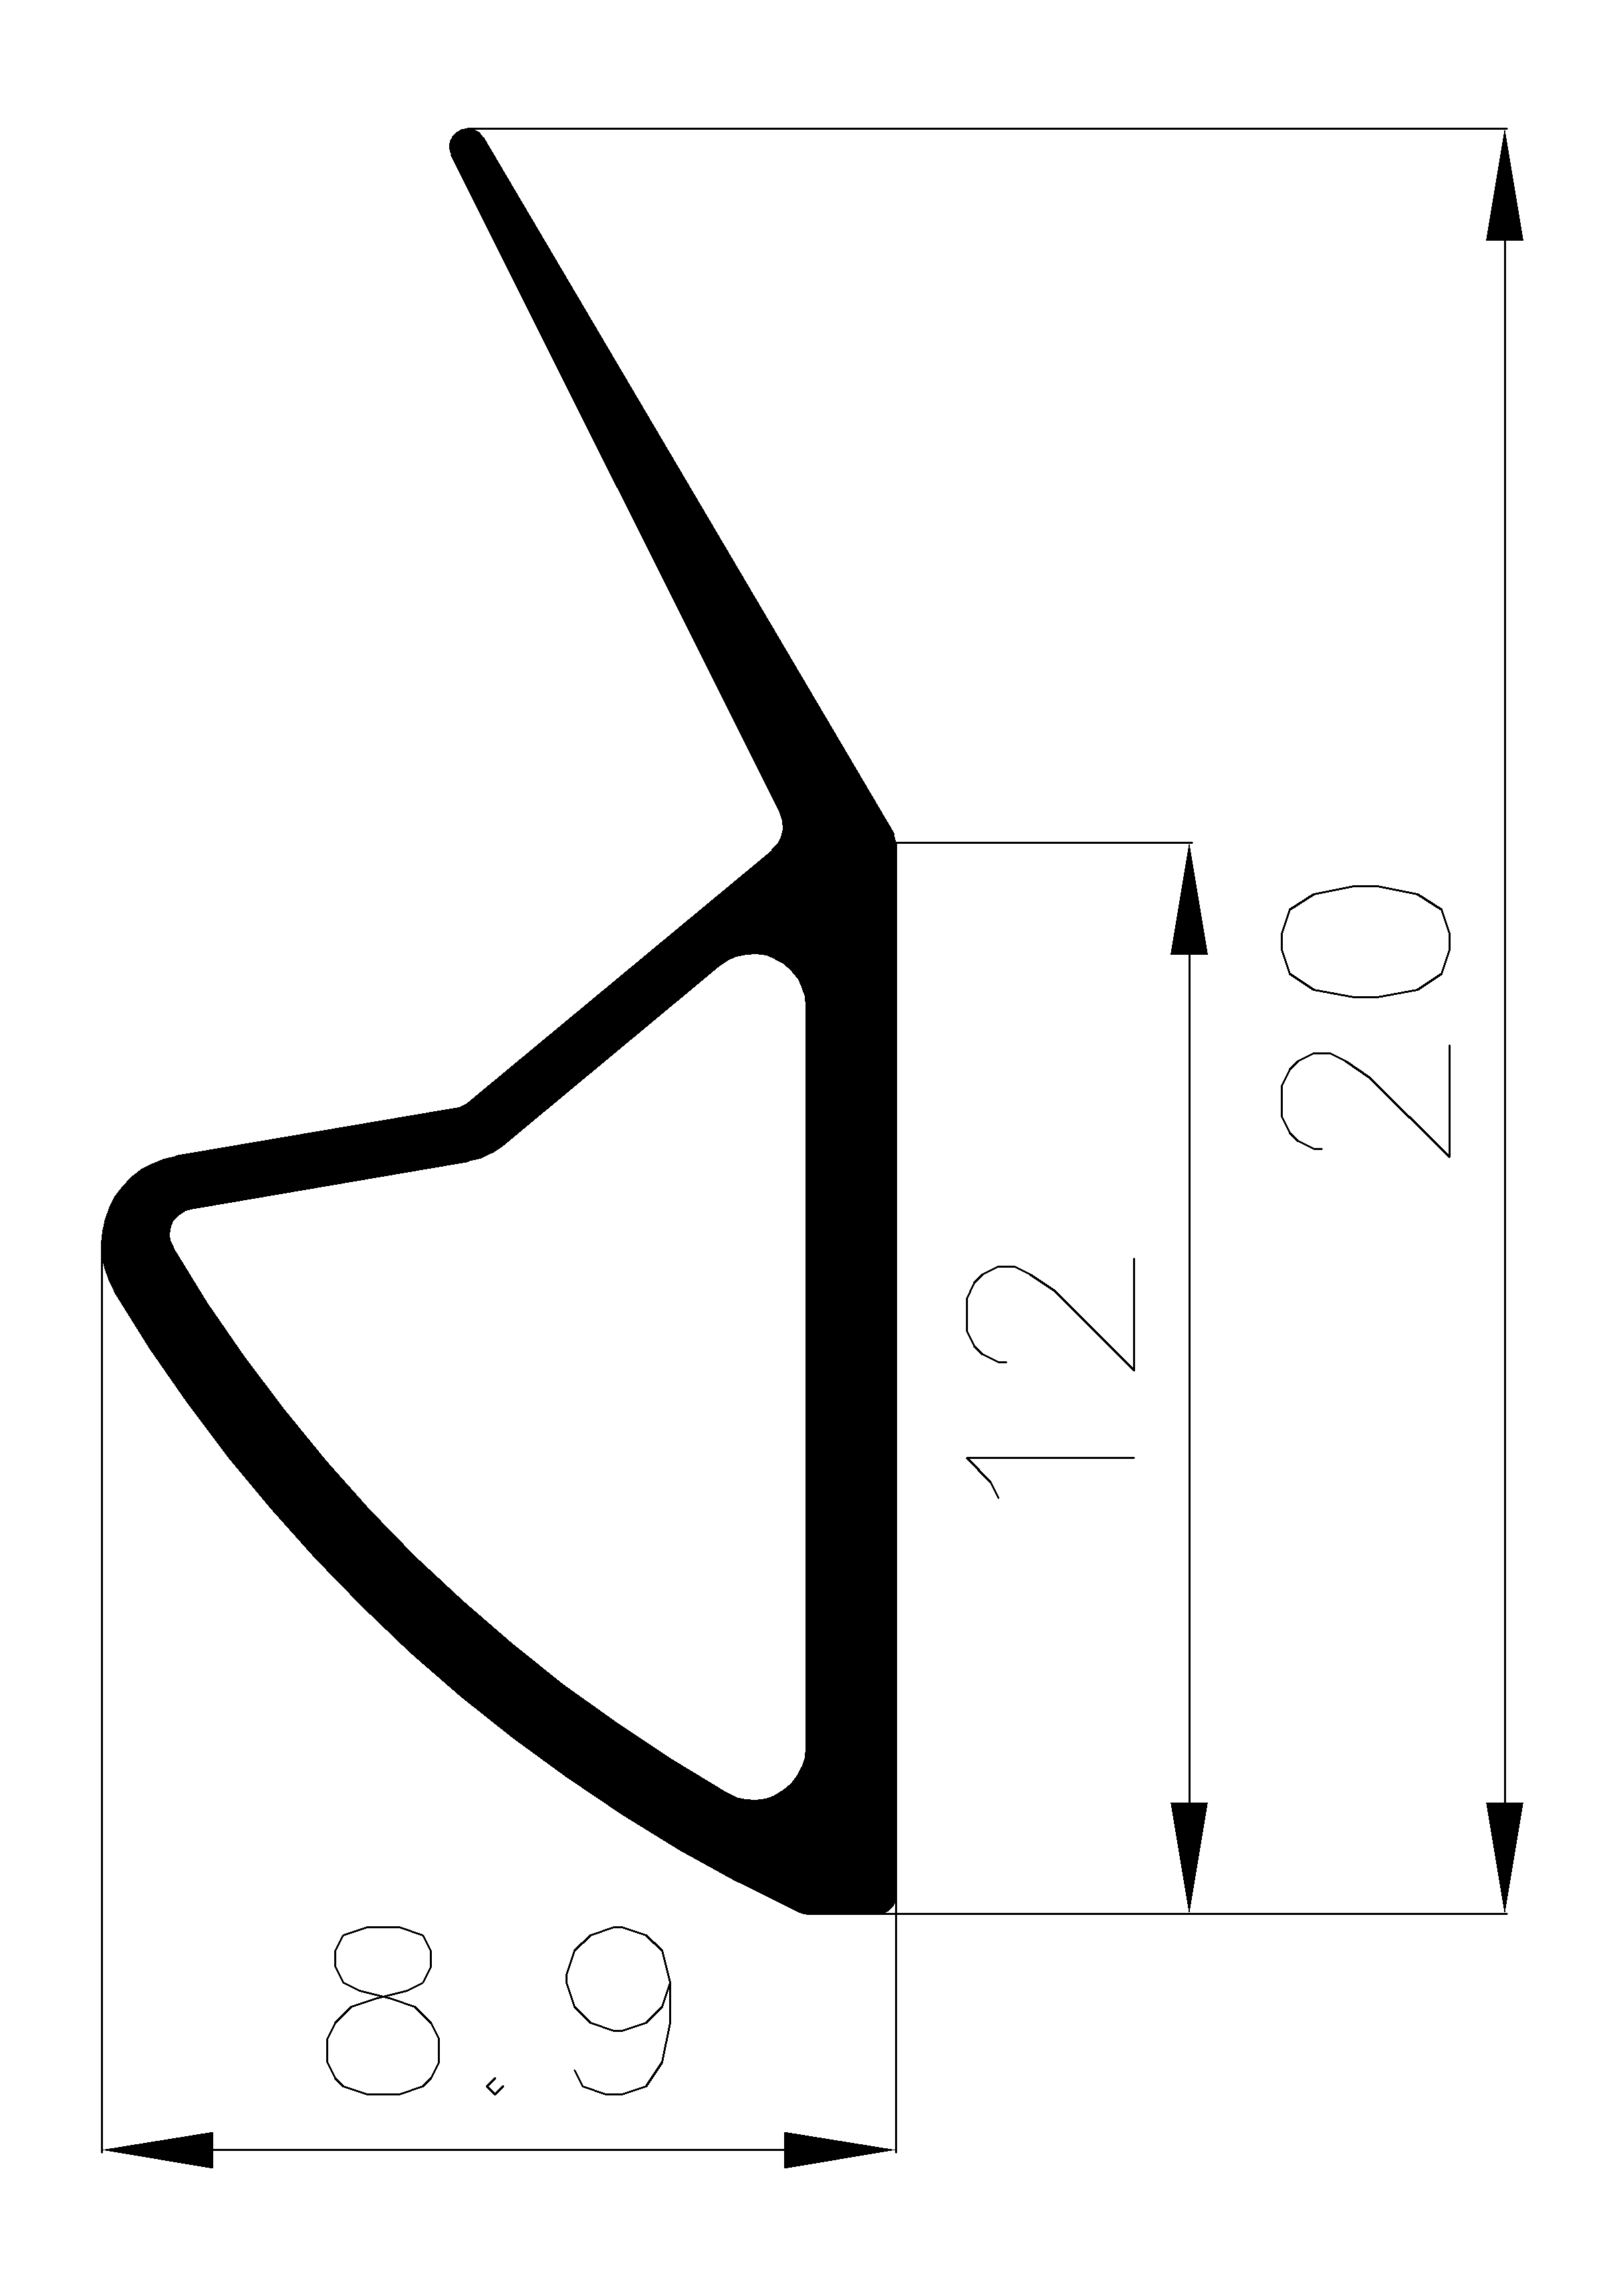 10320370KG - gumi profilok 100 métertől - Ajtókeret- ablak tömítő profilok